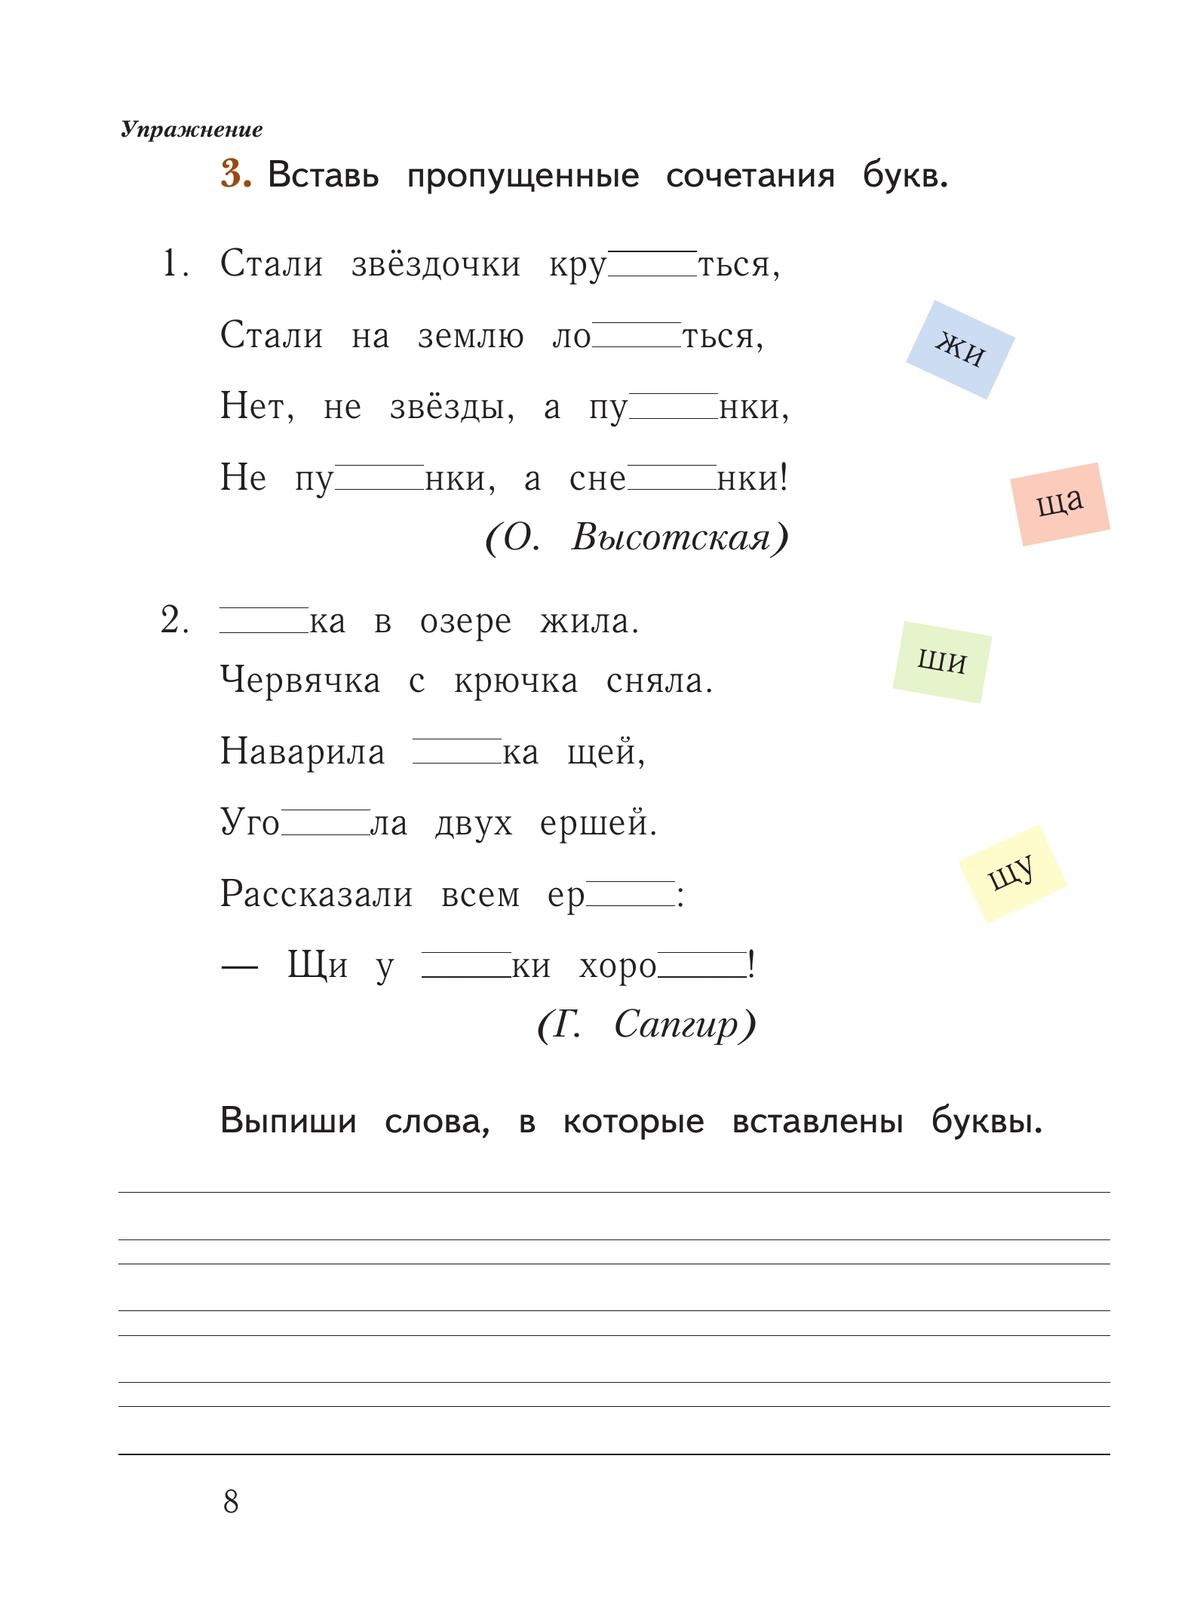 Русский язык. 1 класс. Рабочая тетрадь. В 2 частях. Часть 2 8